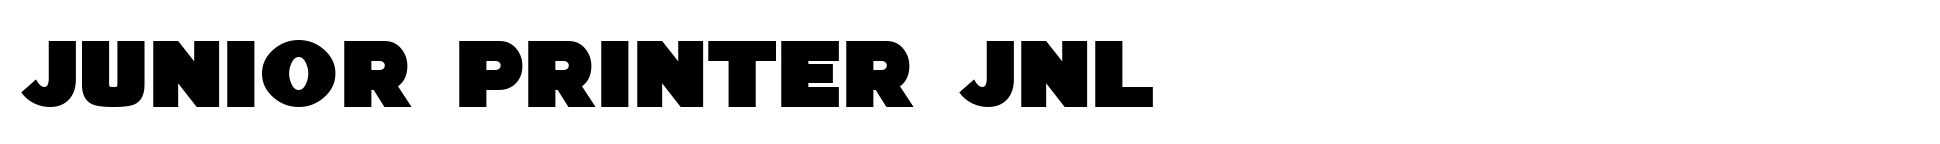 Junior Printer JNL